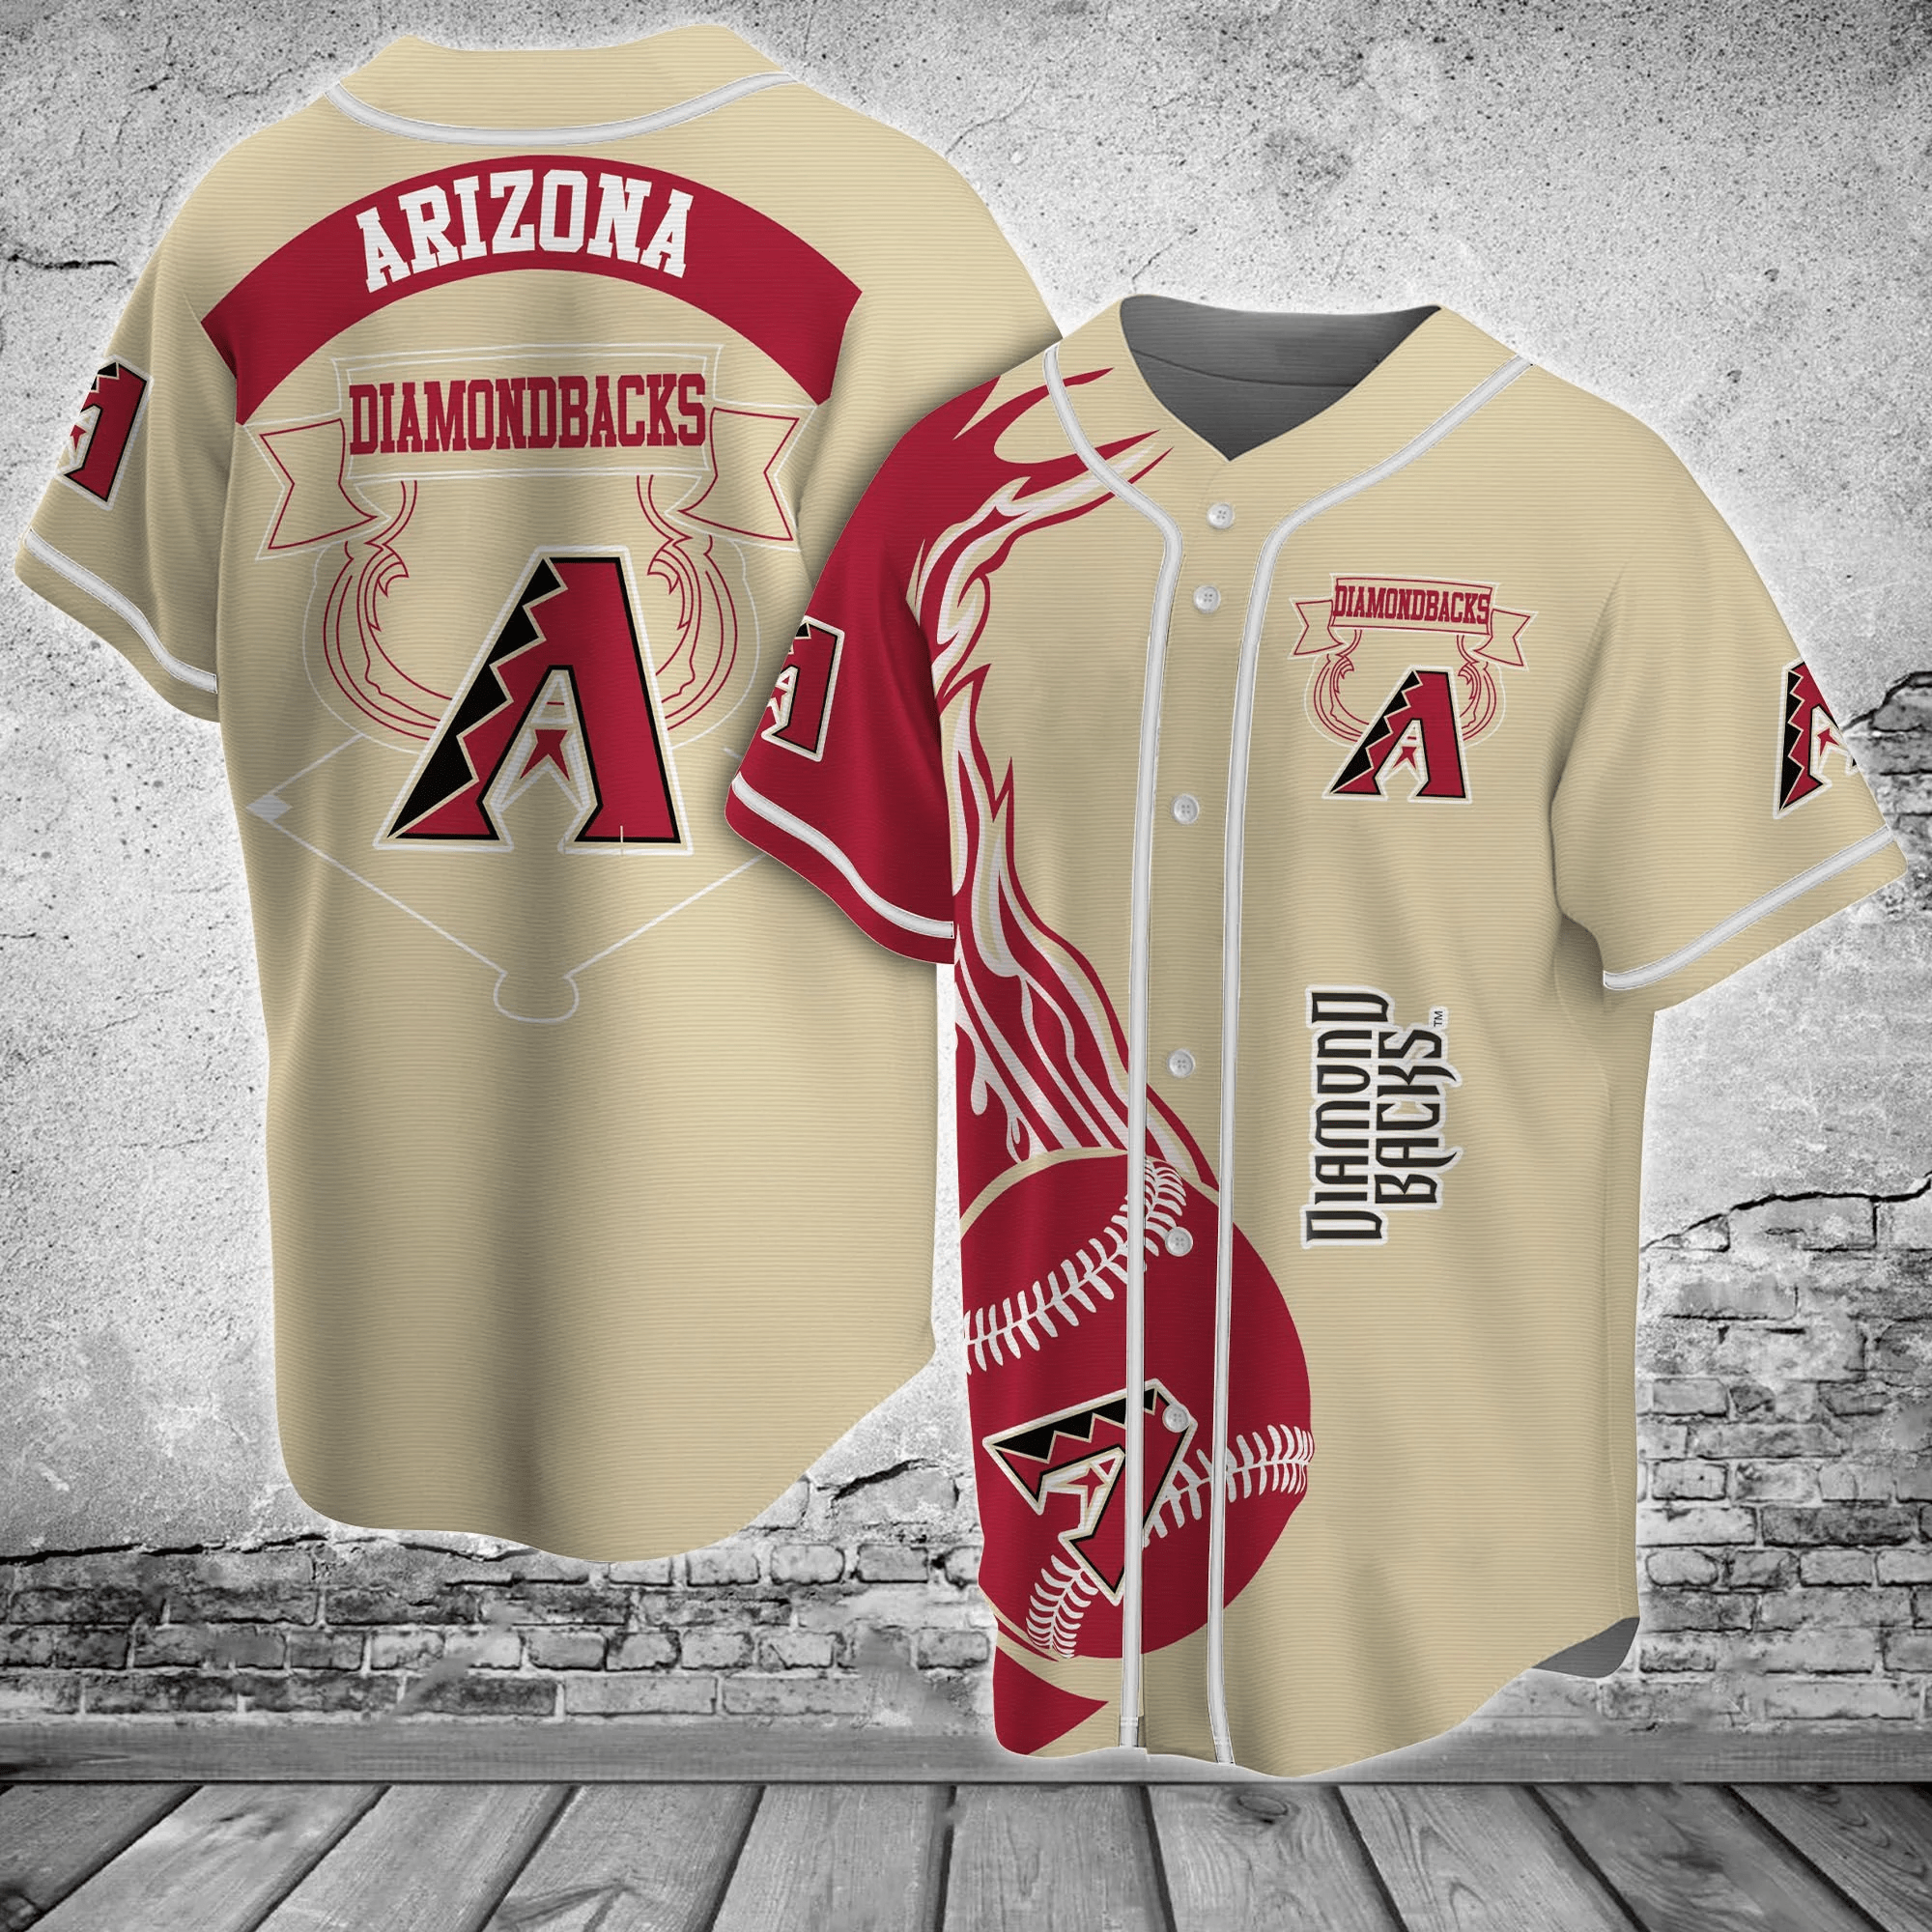 Arizona Diamondbacks MLB Baseball Jersey Shirt Classic FVJ